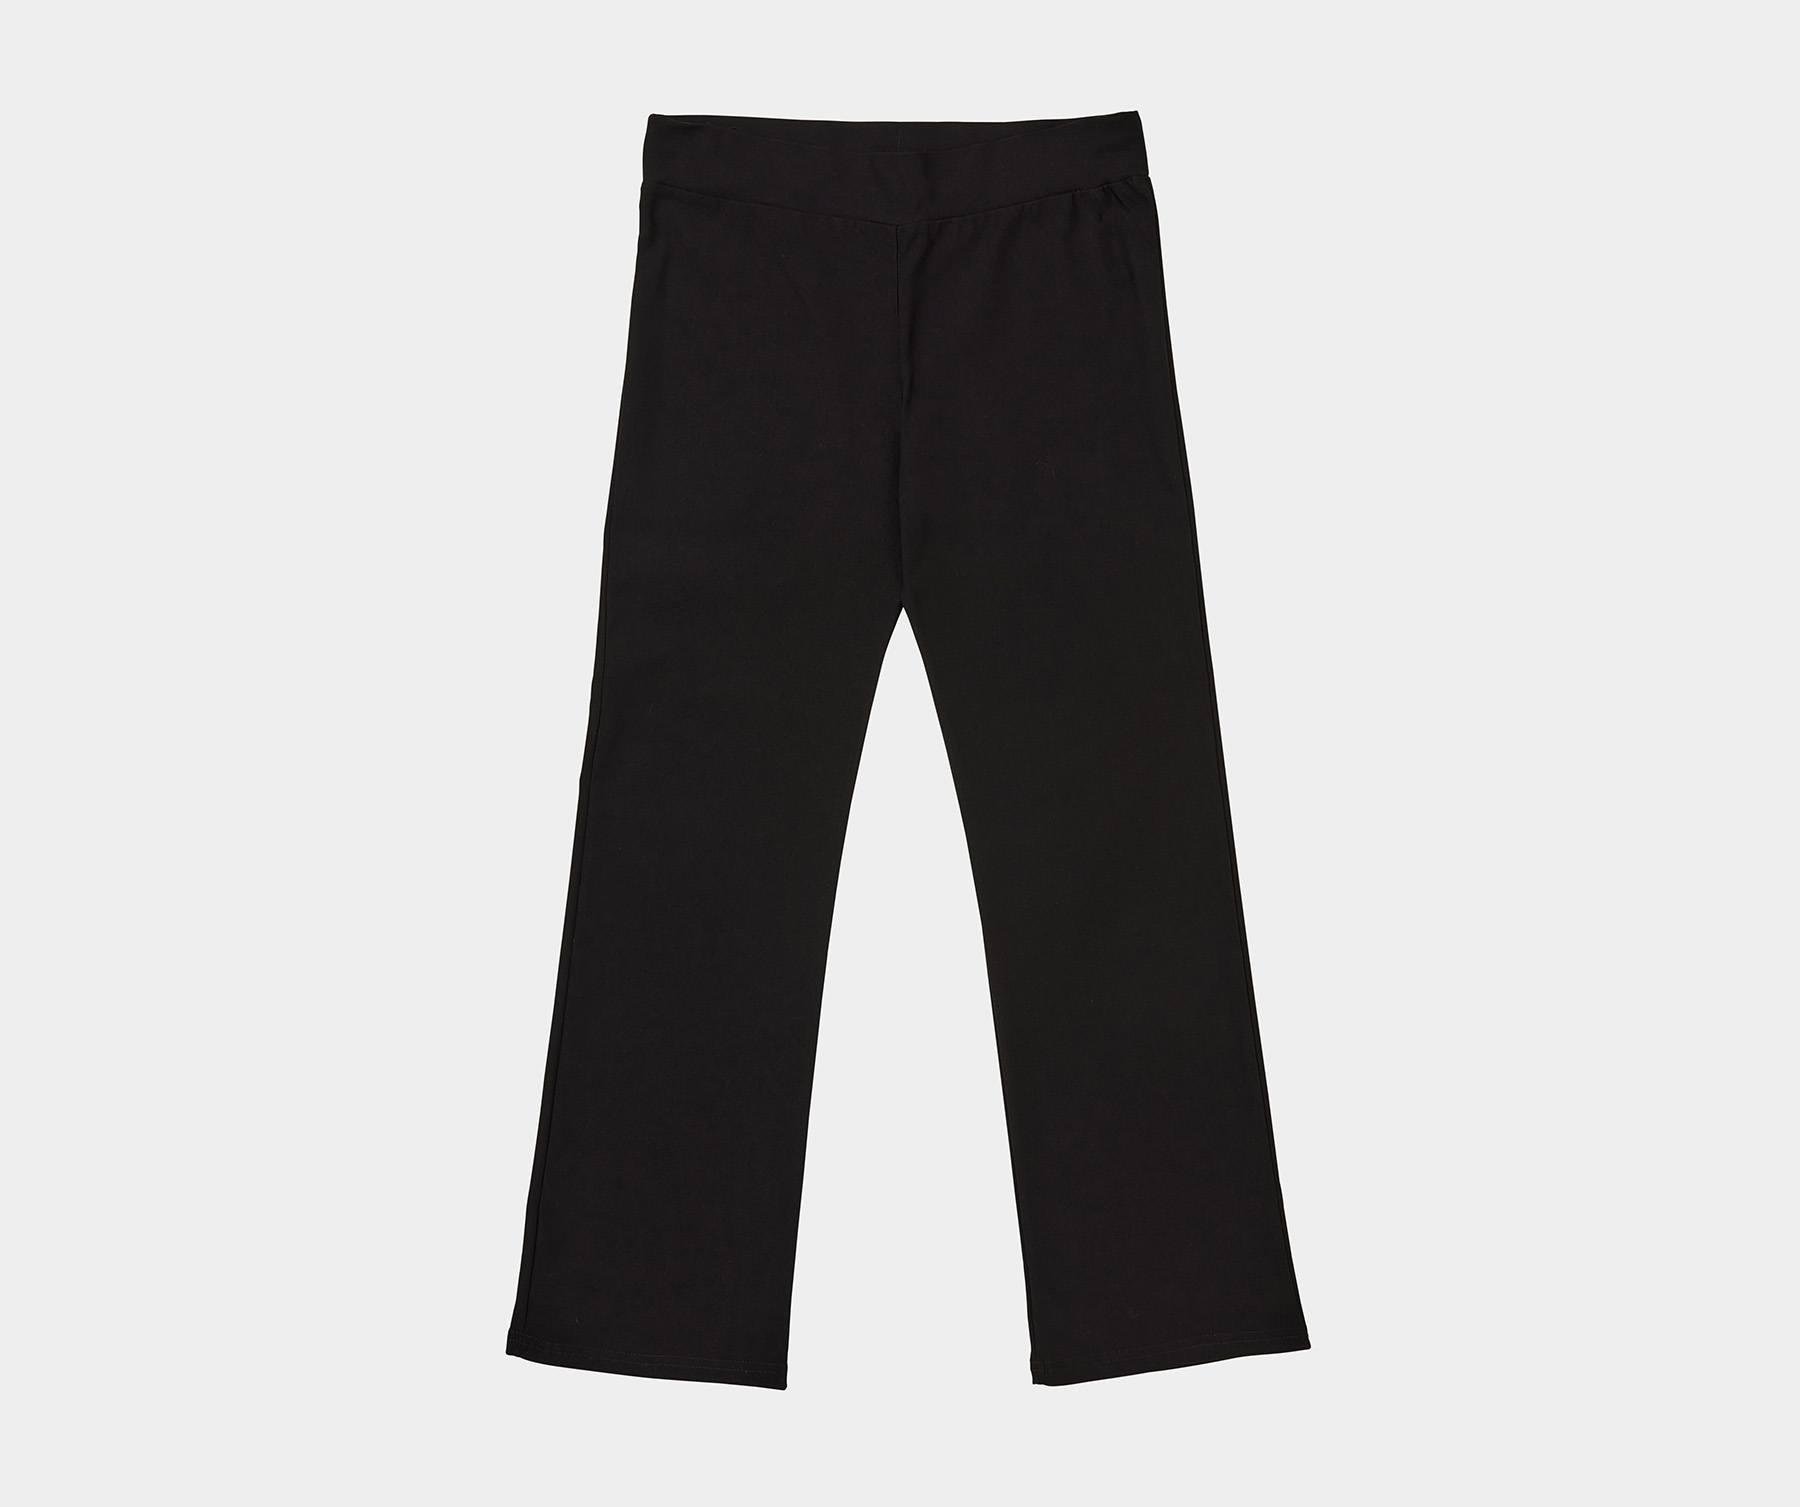 Black Dance Pants - AGC Online Store